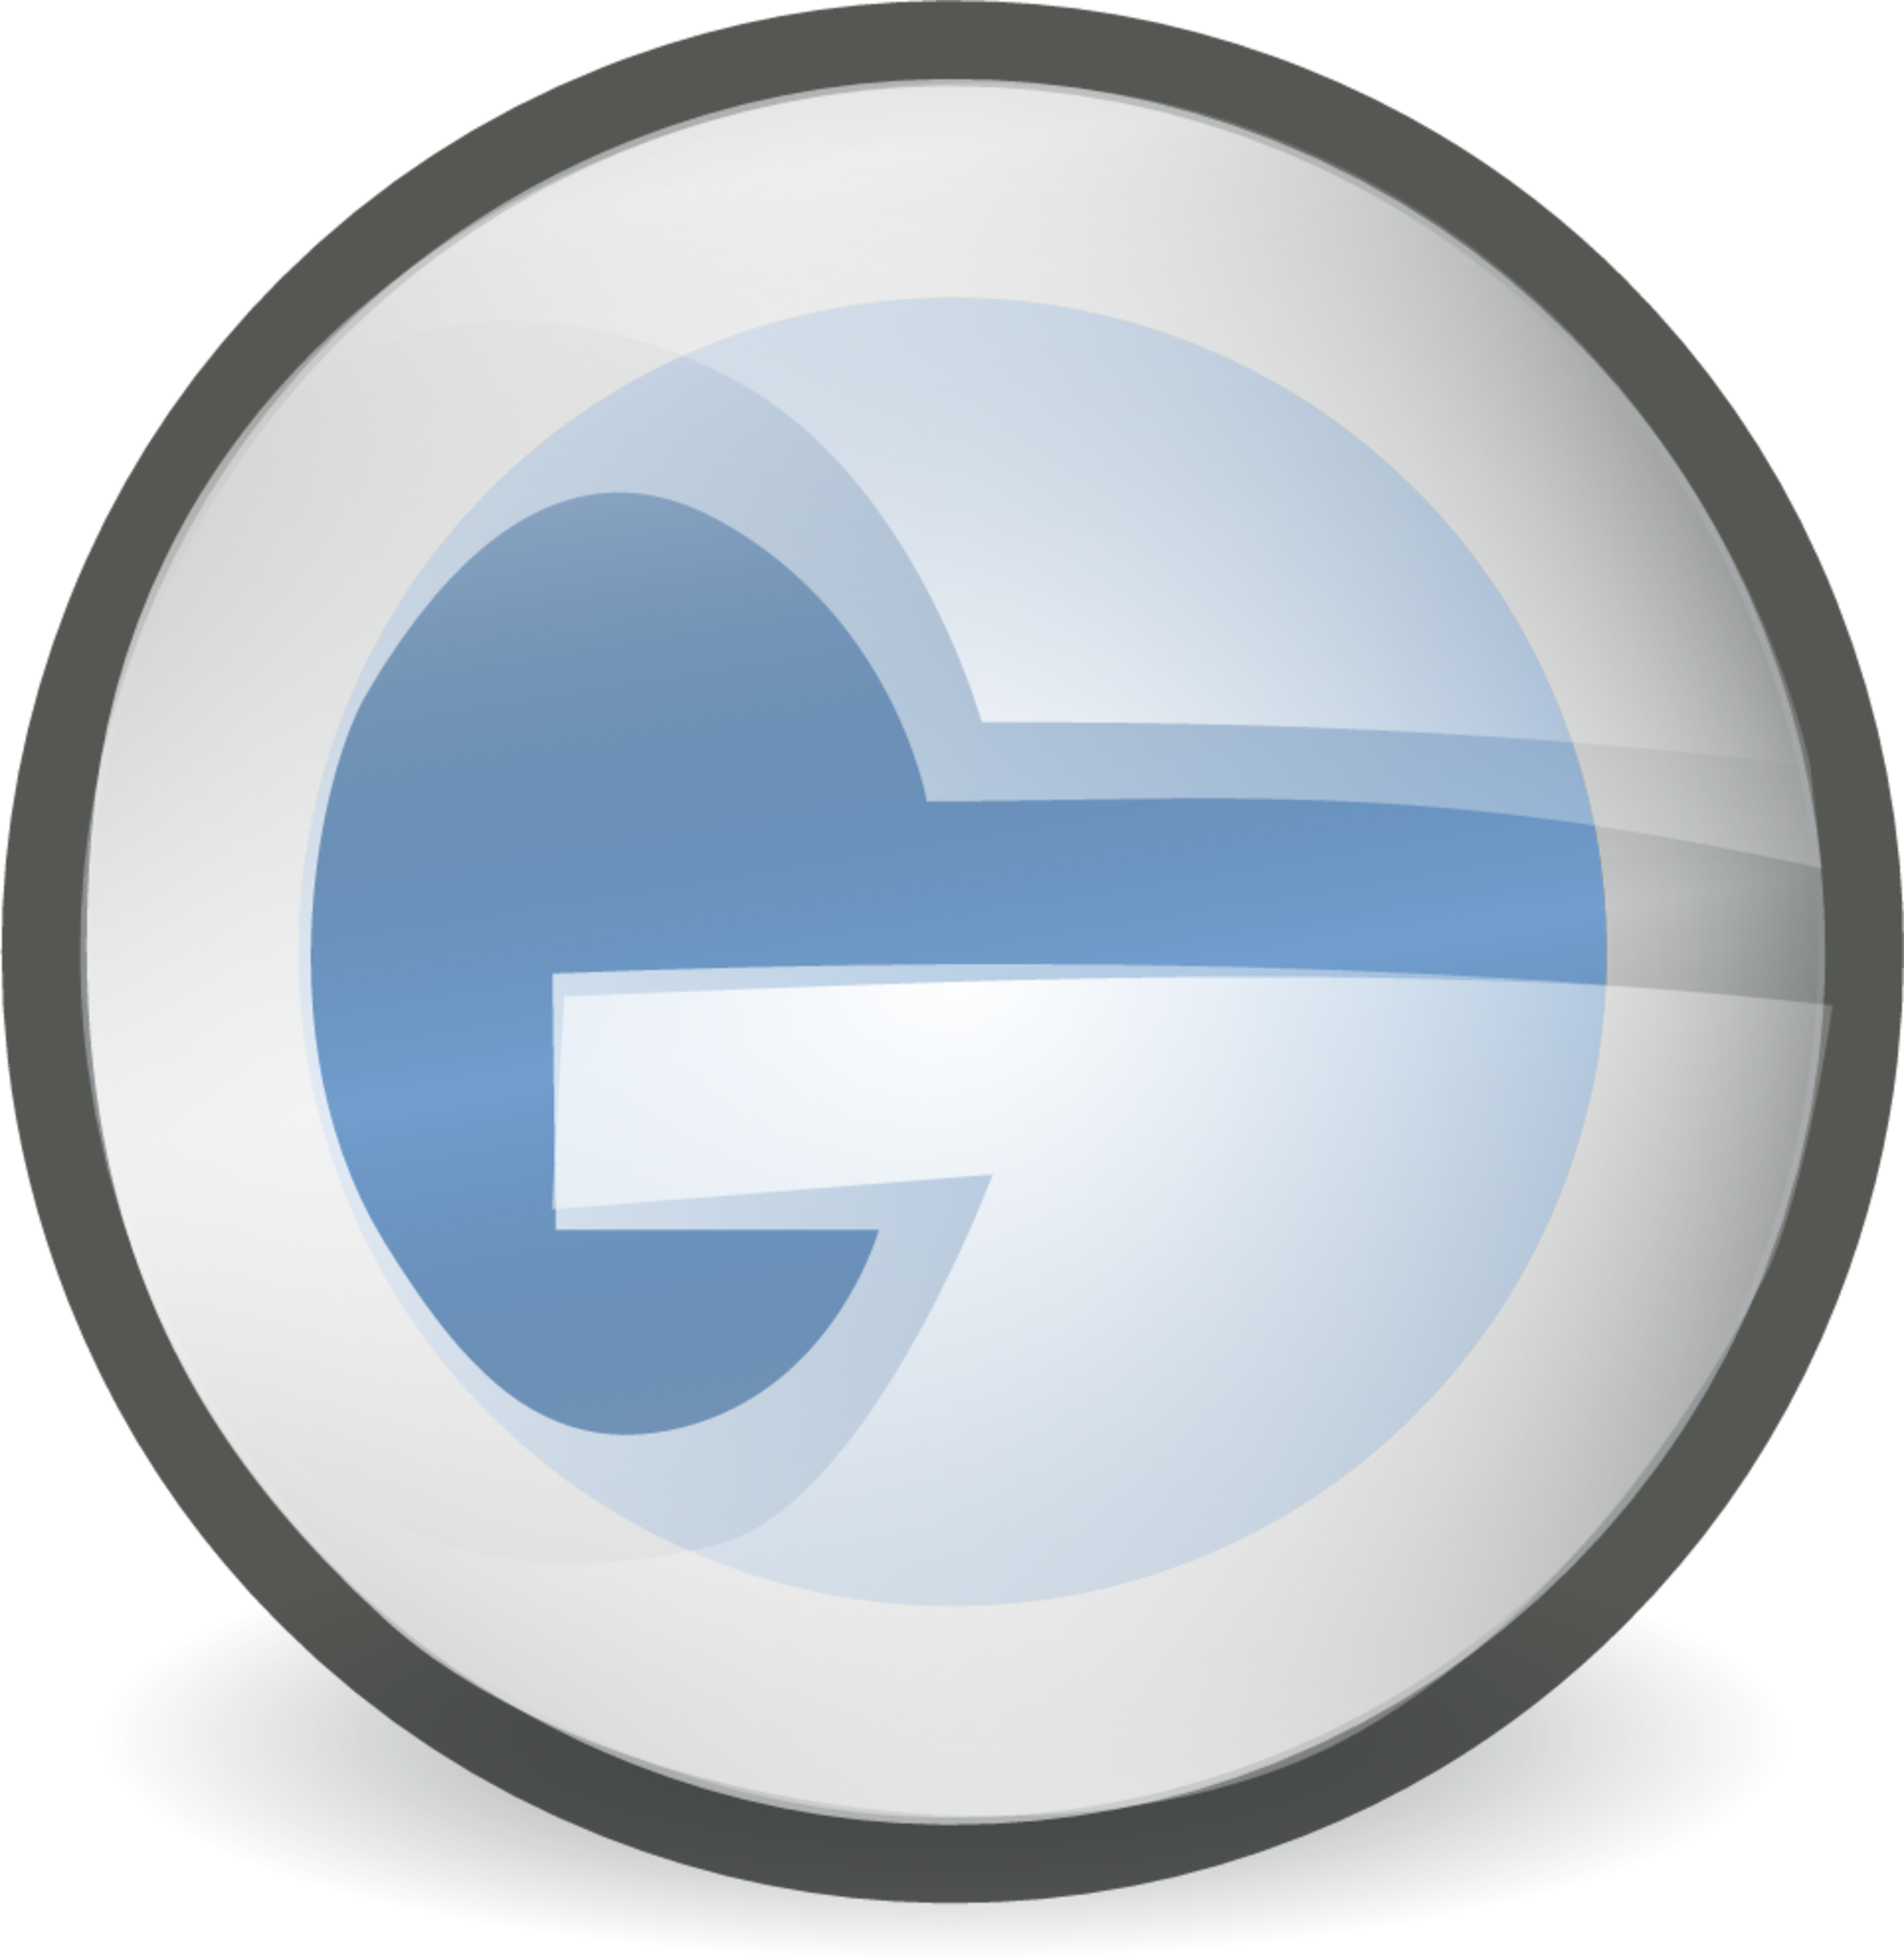 groupwise icon